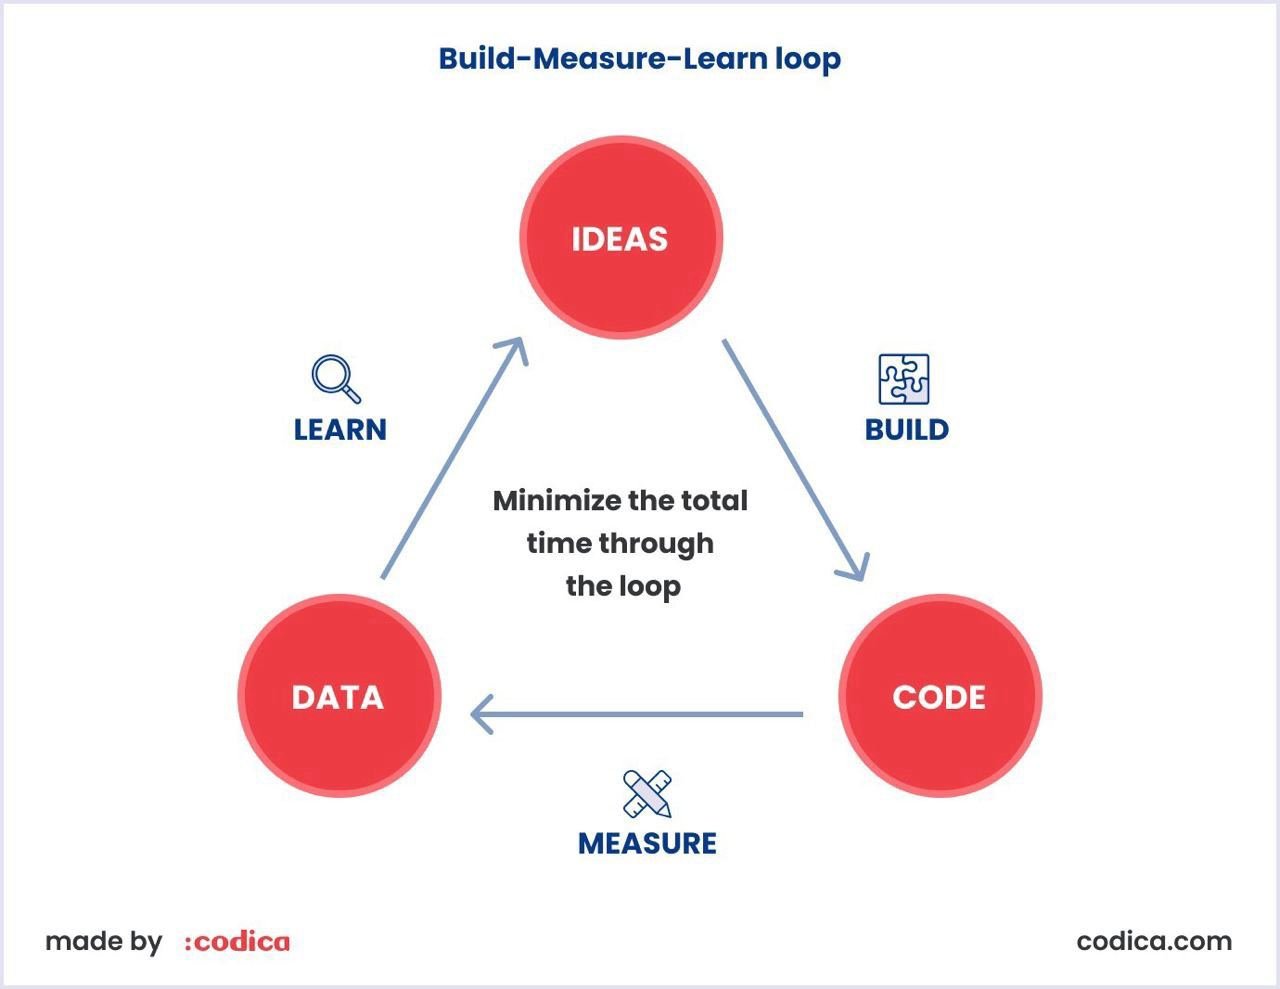 Build-Measure-Learn loop in Codica